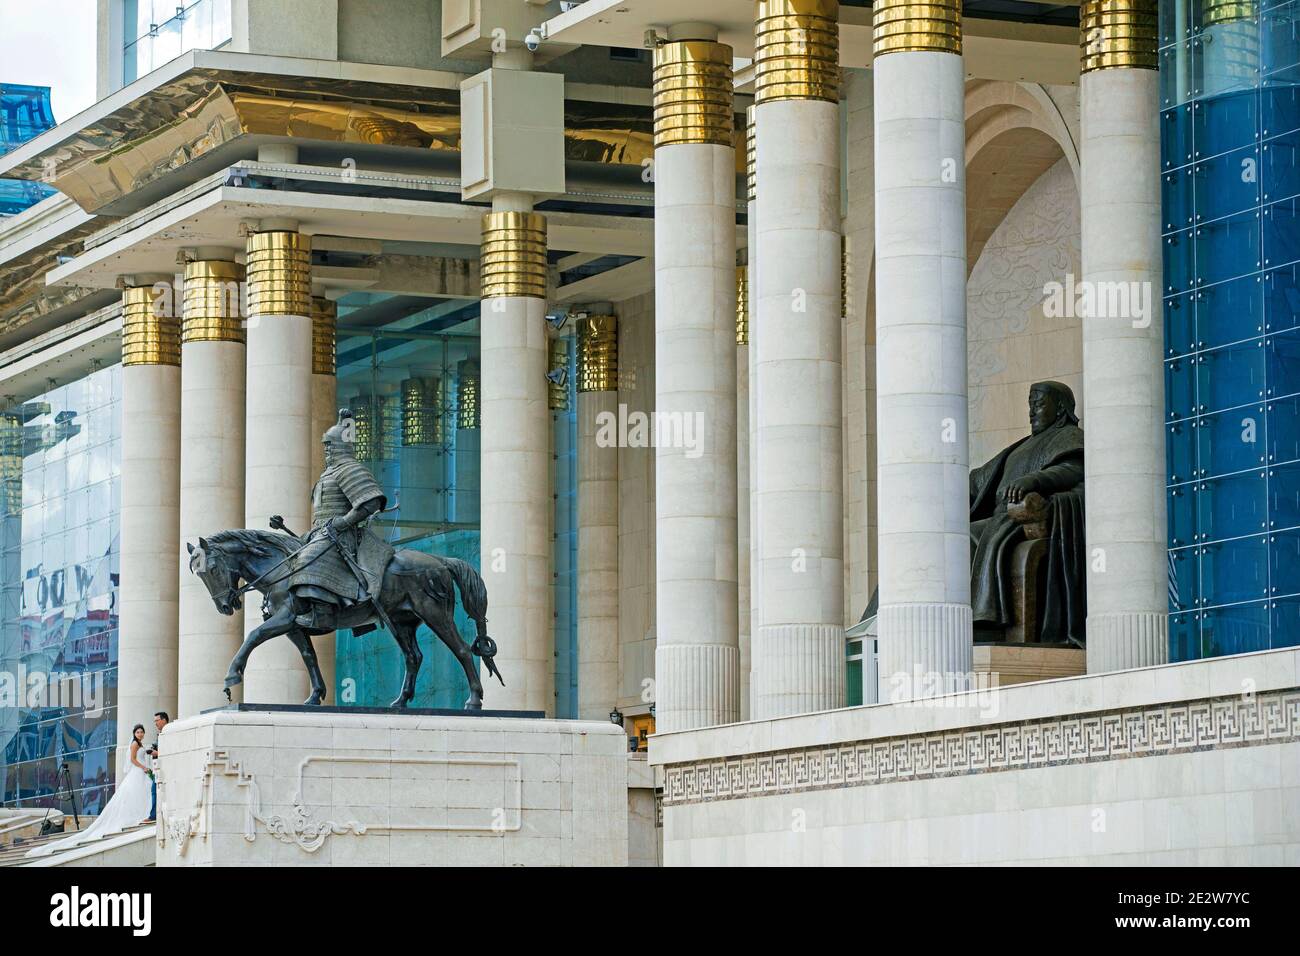 Entrée principale au Palais du Gouvernement mongol / Palais d'Etat avec statue de Gengis Khan dans la capitale Ulaanbaatar / Oulan Bator, Mongolie Banque D'Images